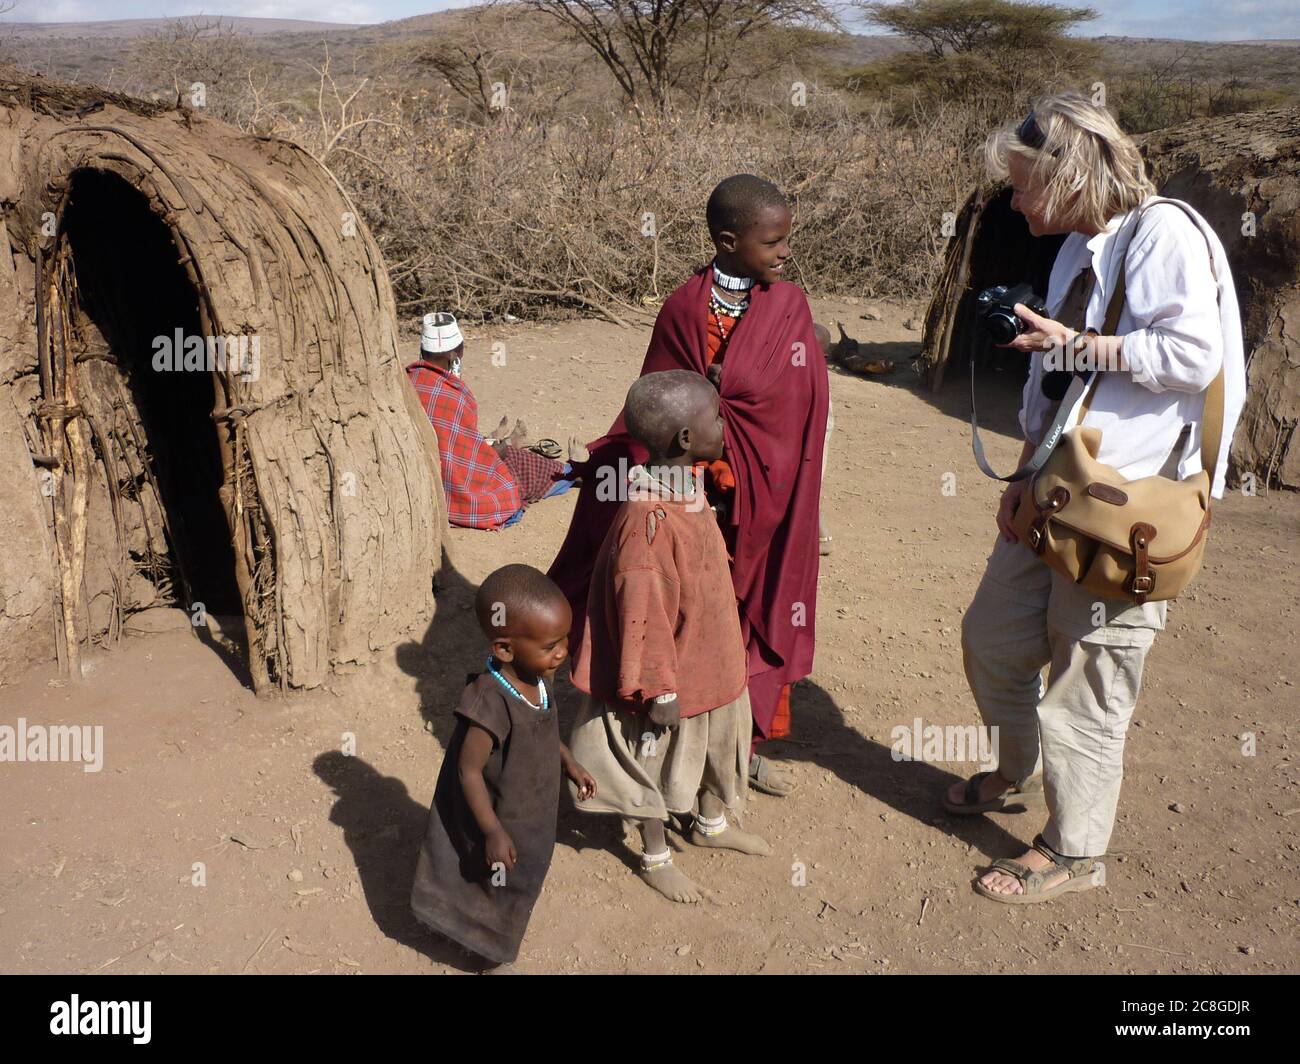 Sympathique, blonde, femme touriste avec caméra à la main discutant avec trois enfants timides et souriants Masai dans un village tribal avec des huttes de boue, Tanzanie. Banque D'Images